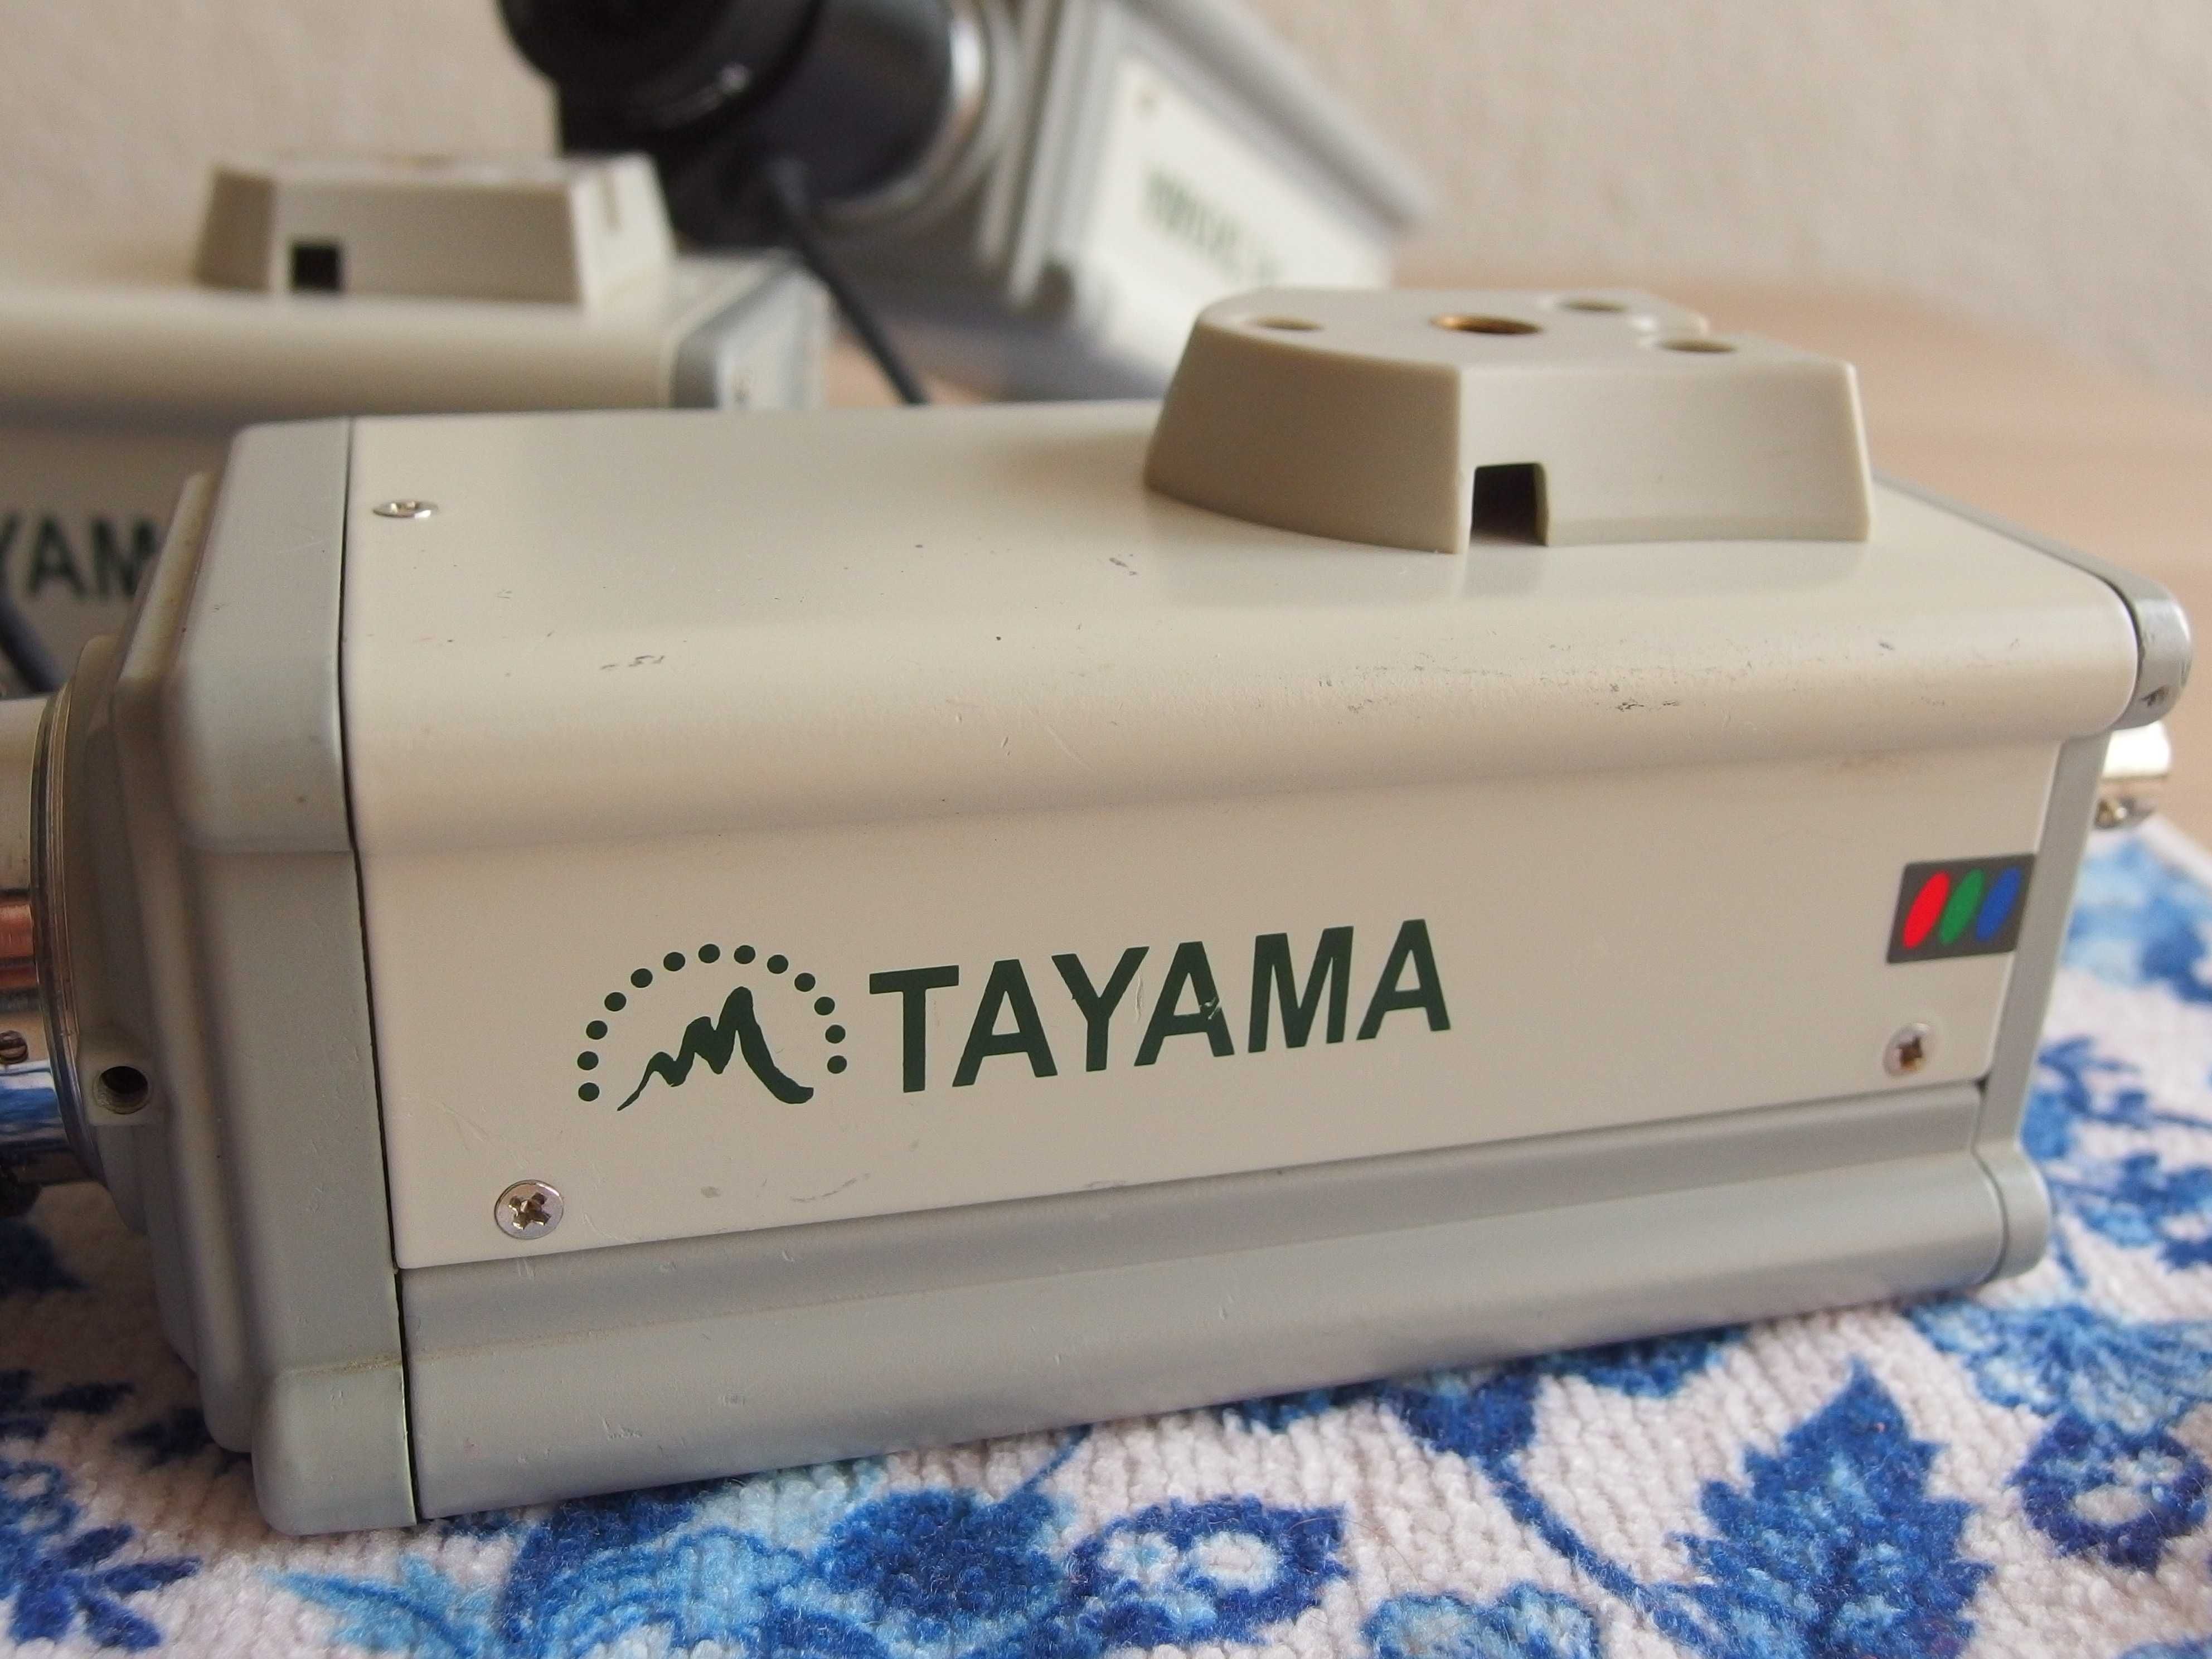 3x kamera Kamera przemysłowa Tayama C3804 + Obiektyw 3,5-8,0mm f1.4